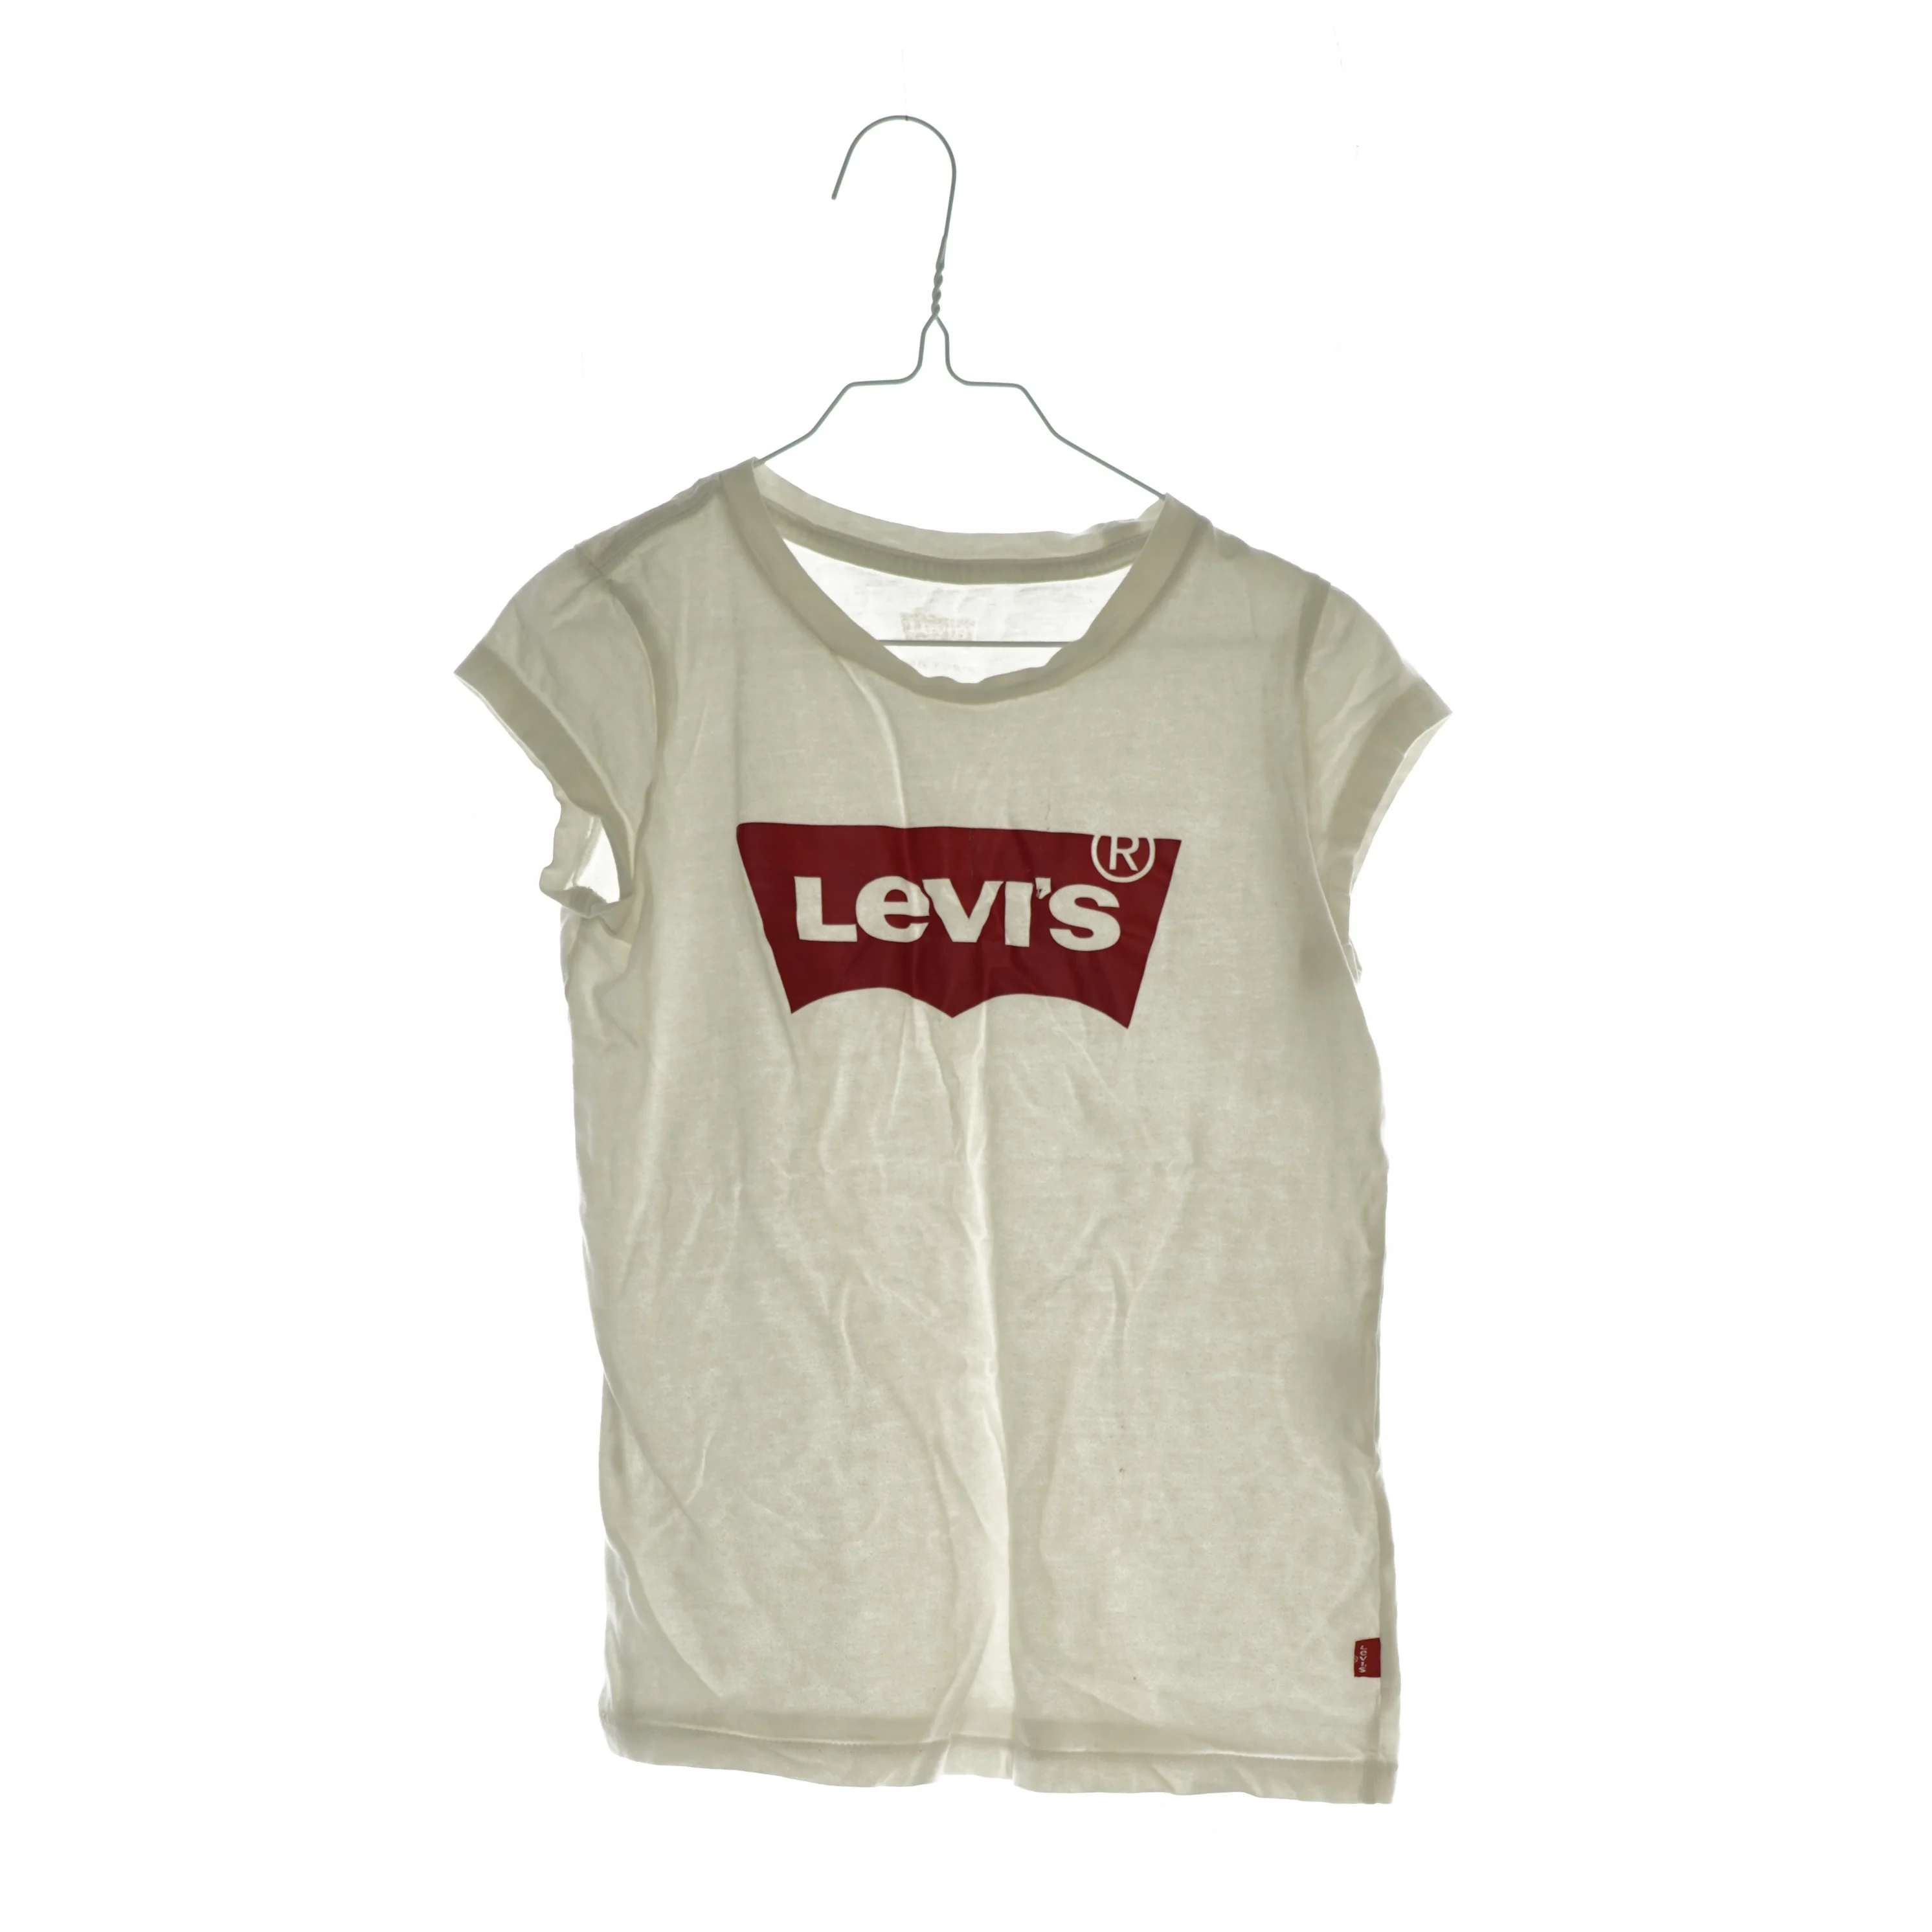 stavelse Romantik kompression T-Shirt fra Lewis (str. 140) | Orderly.shop